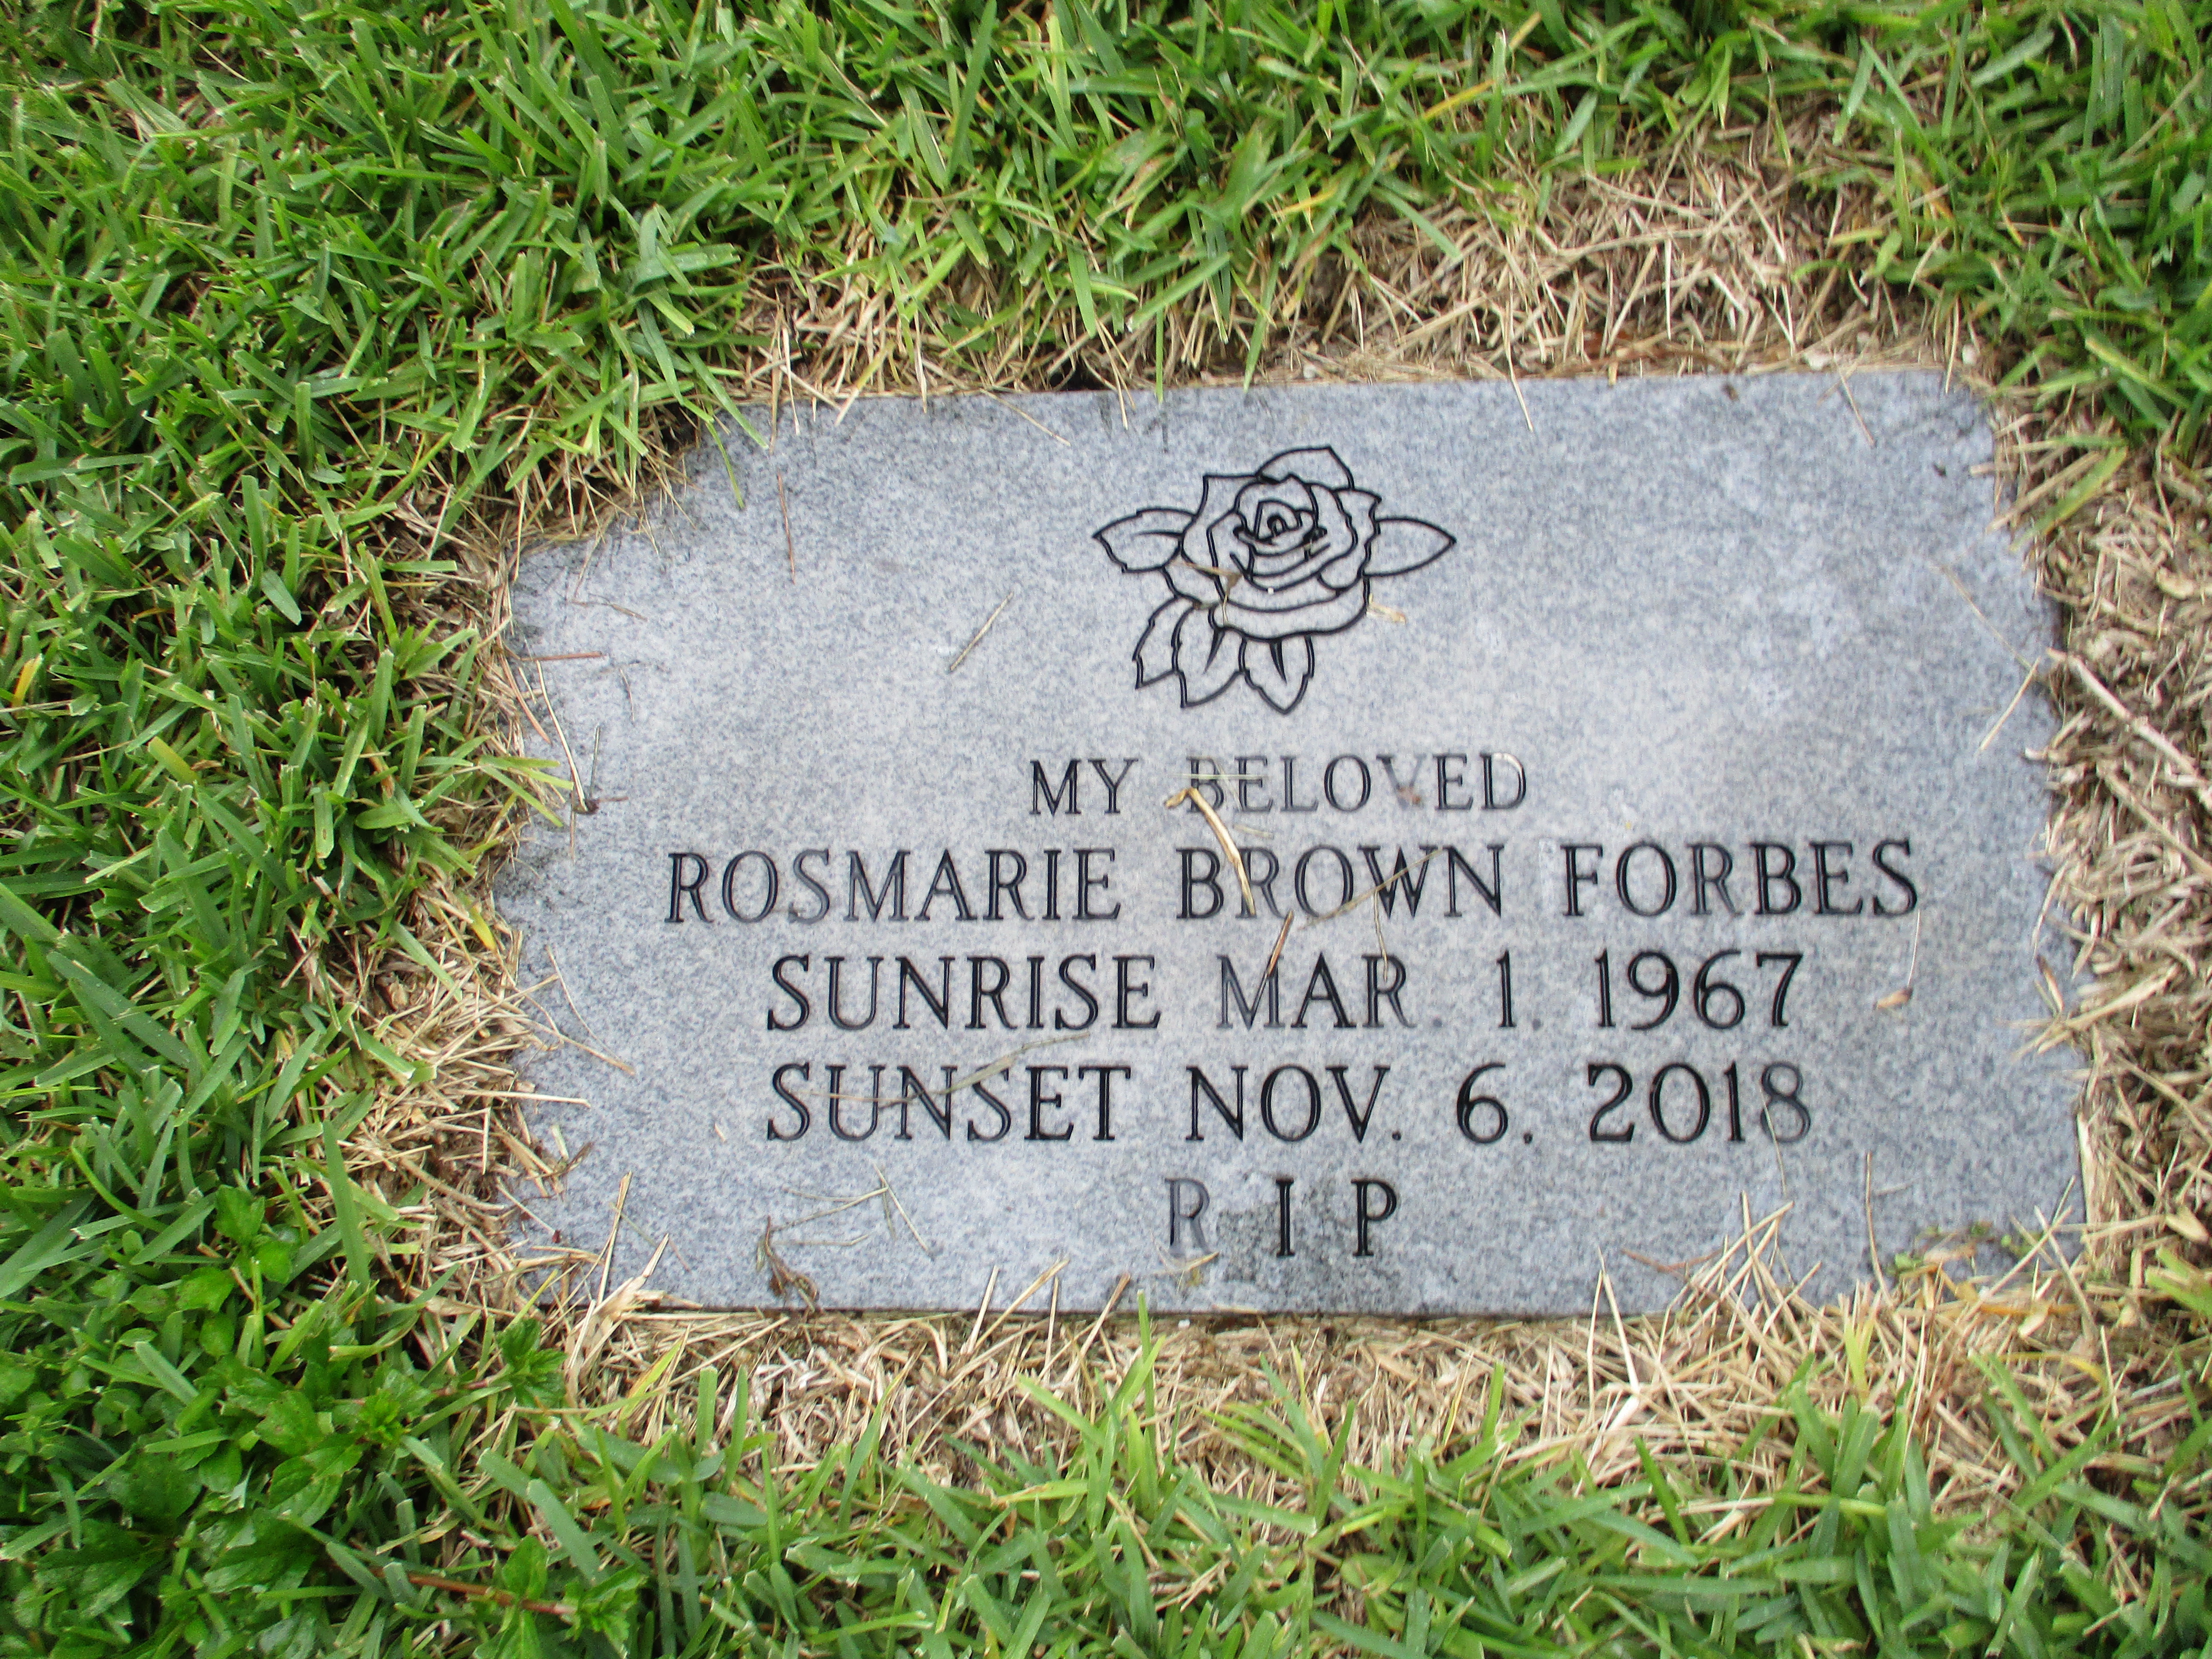 Rosmarie Brown Forbes